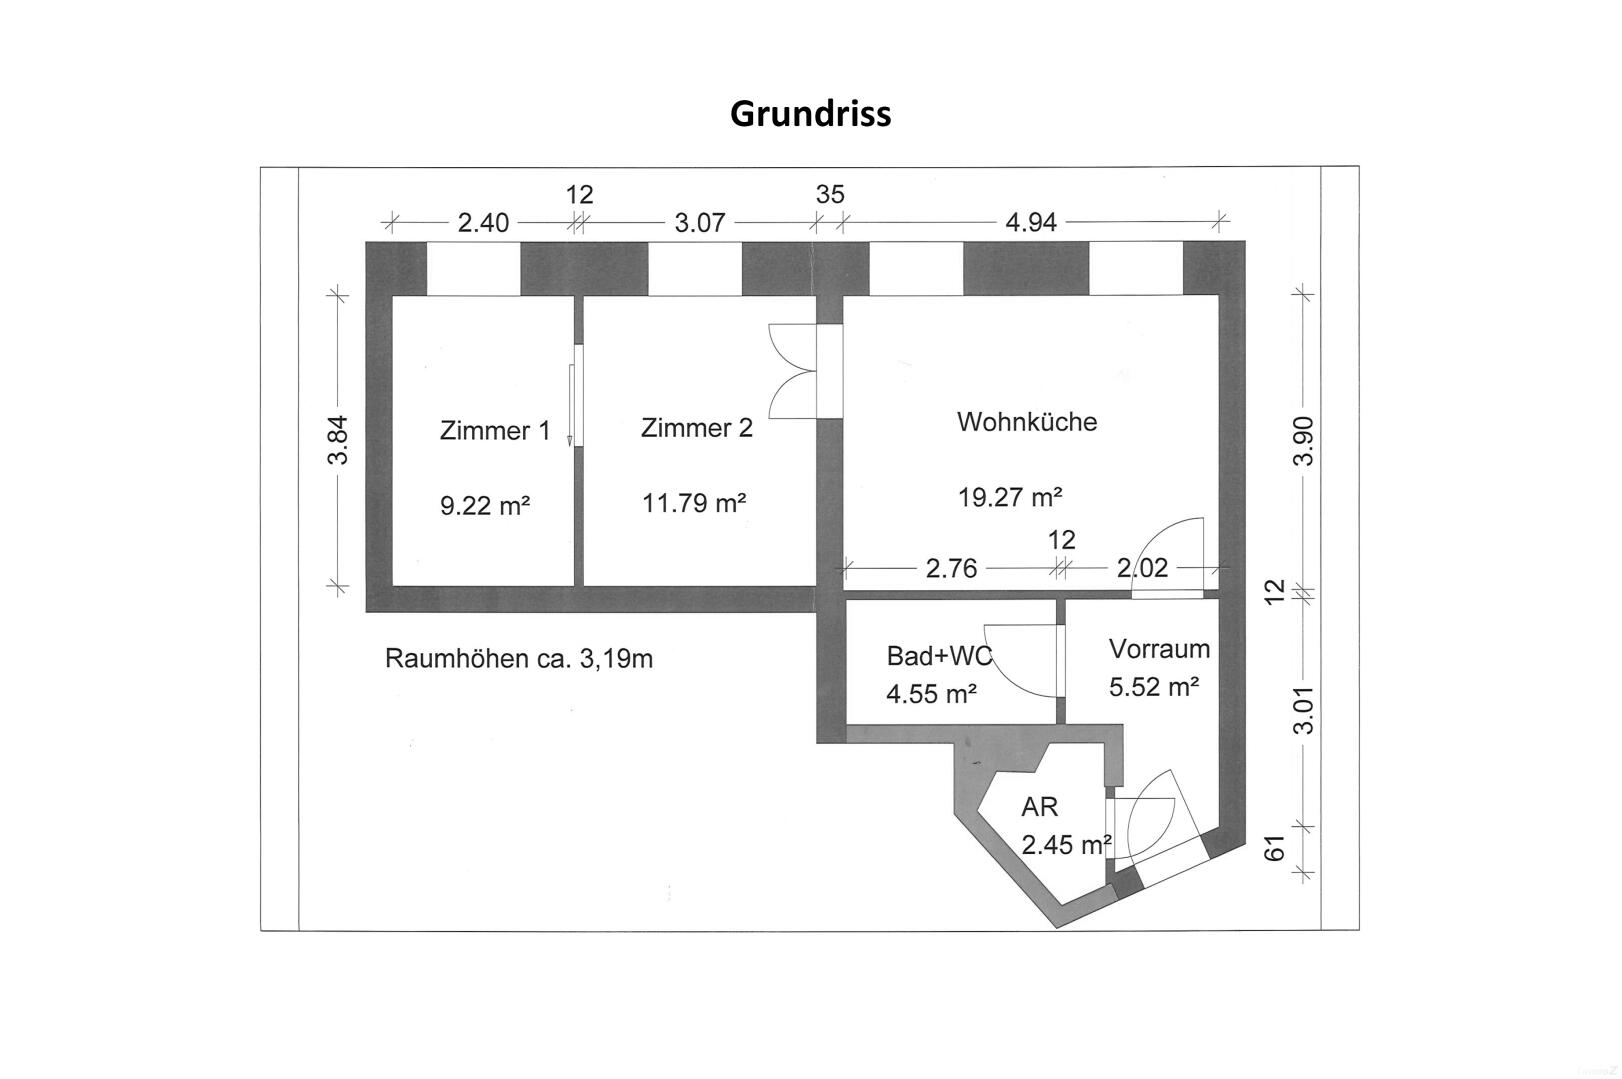 Wohnung zu kaufen: Schillerstraße 1, 8010 Graz - Grundriss Querformat